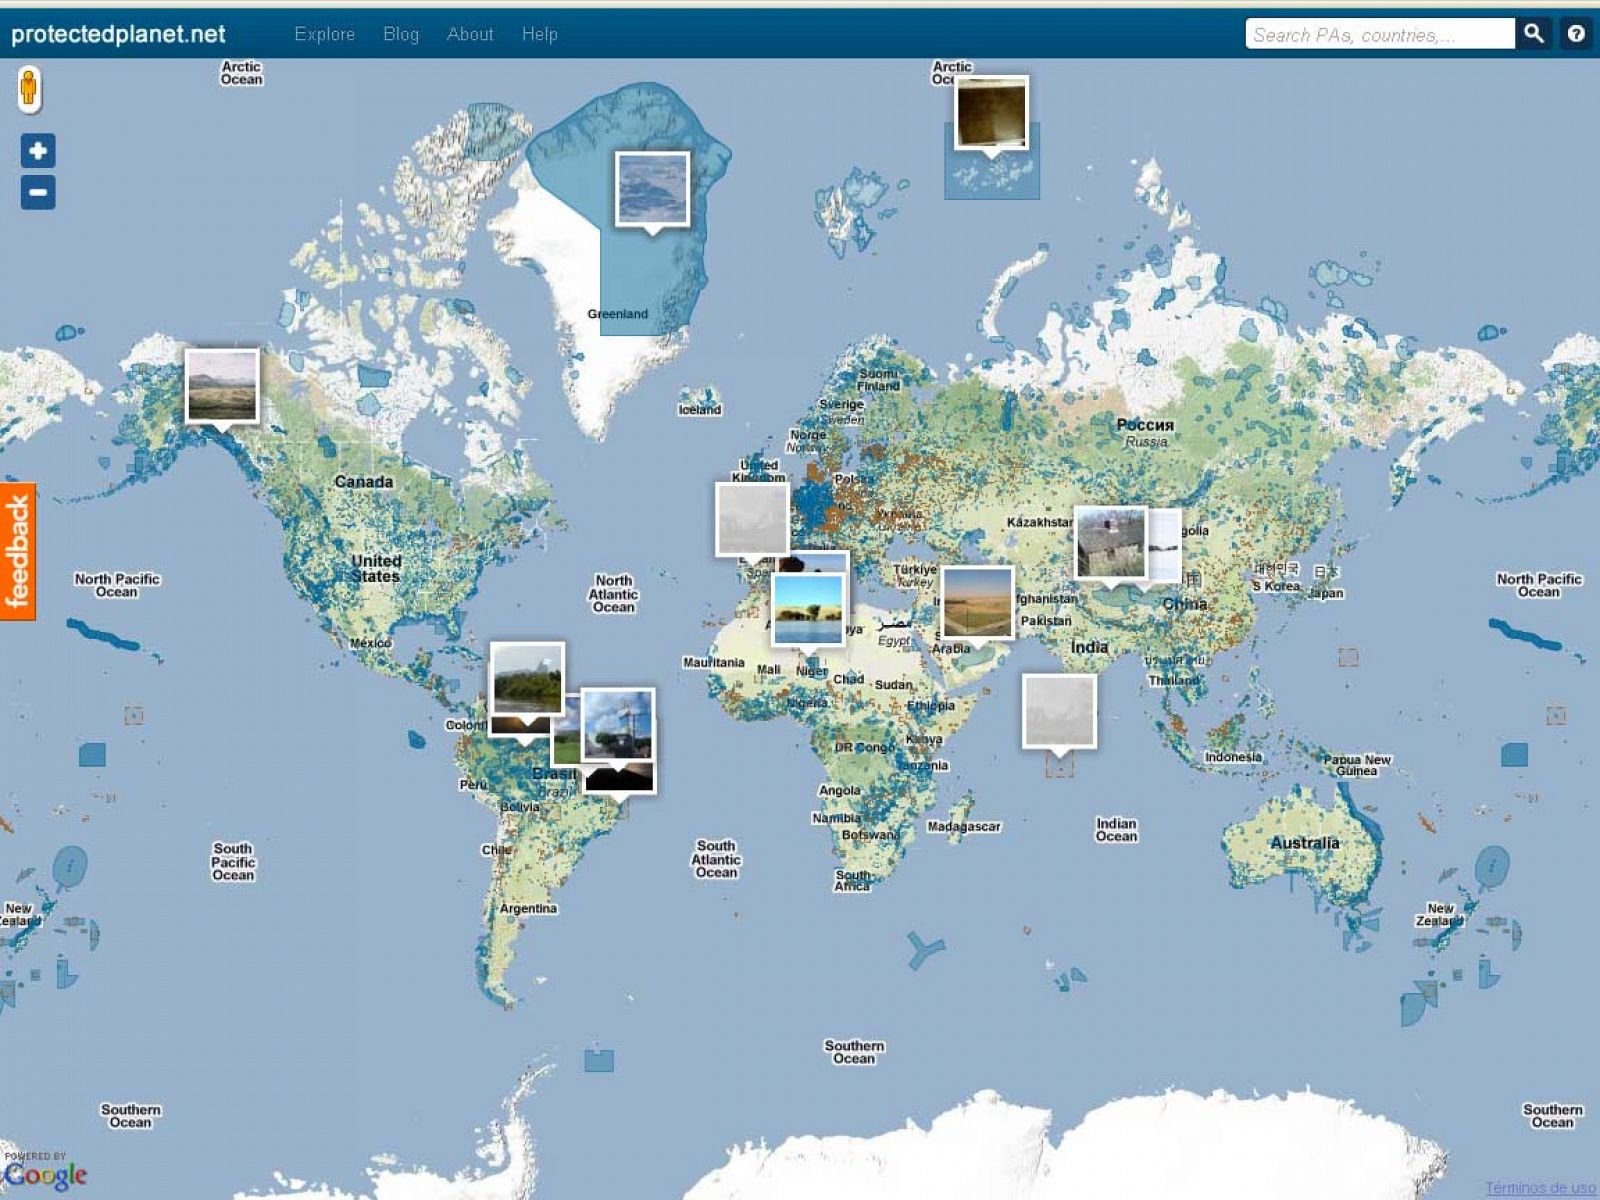 En el wikimundo de la ONU se muestran las áreas protegidas y el objetivo es que la gente contribuya con sus fotos y comentarios.